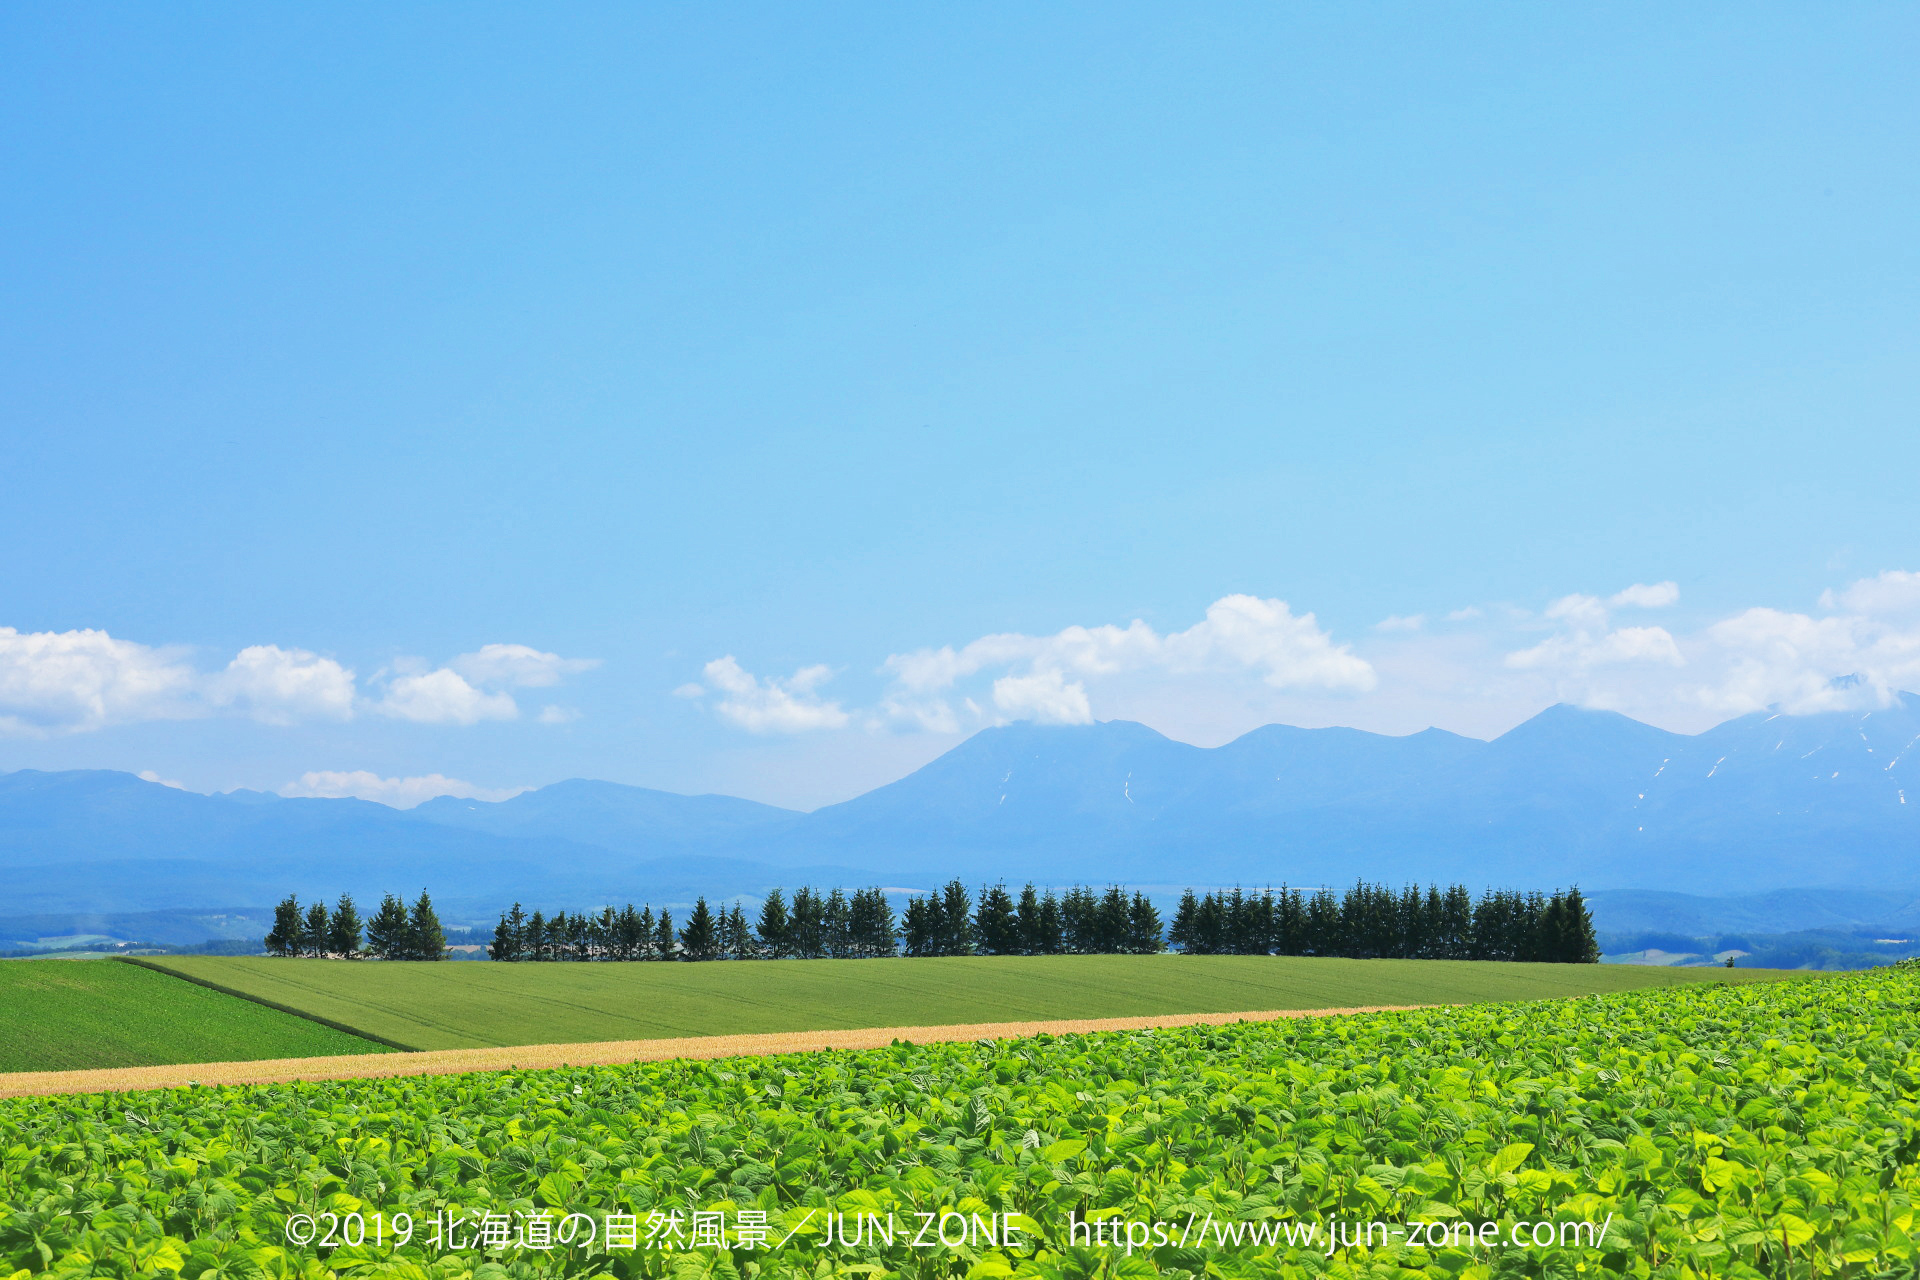 日本の風景 夏の美瑛の丘風景 5 壁紙19x1280 壁紙館